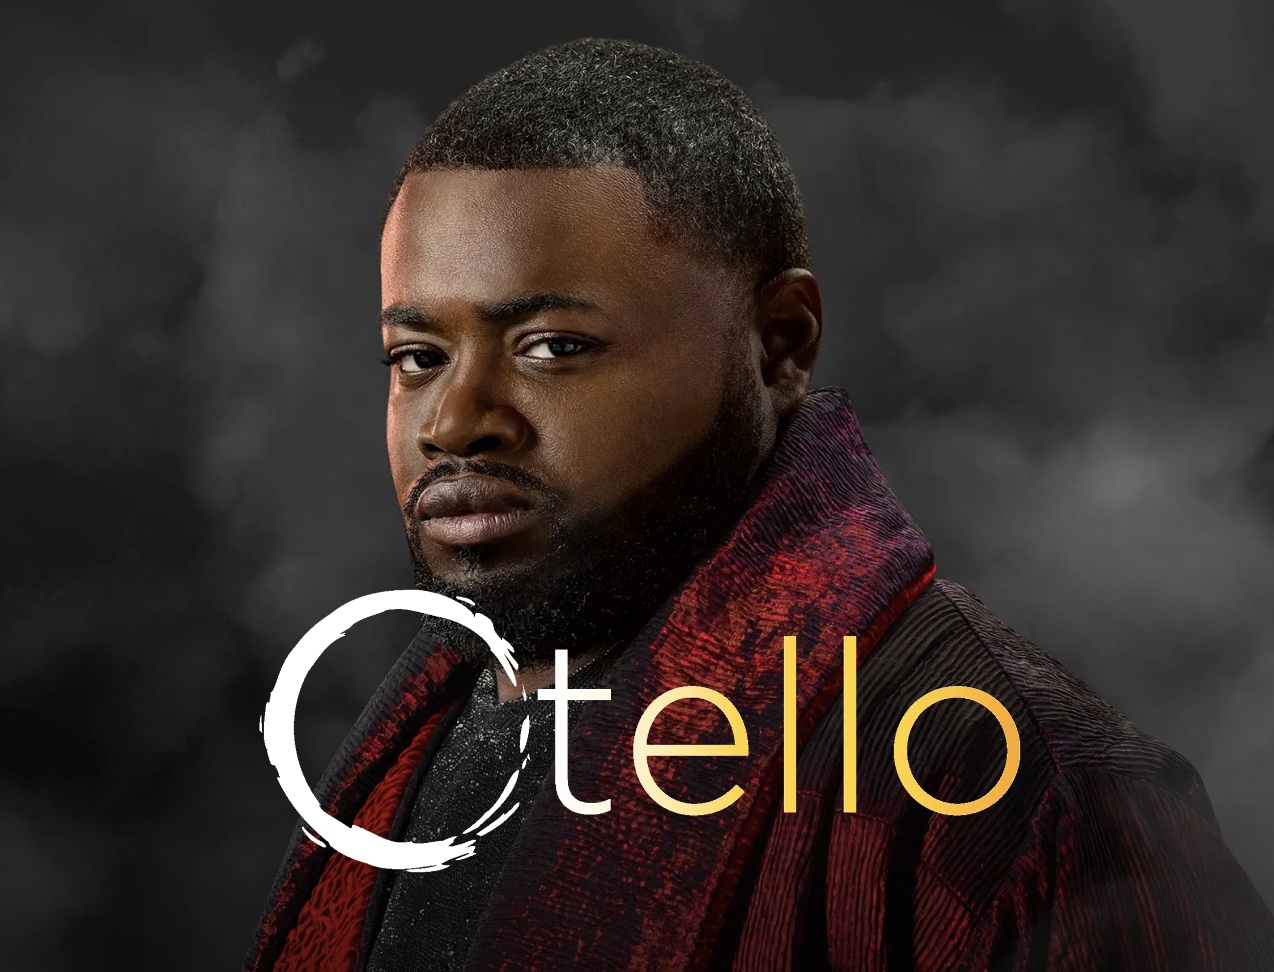 Otello